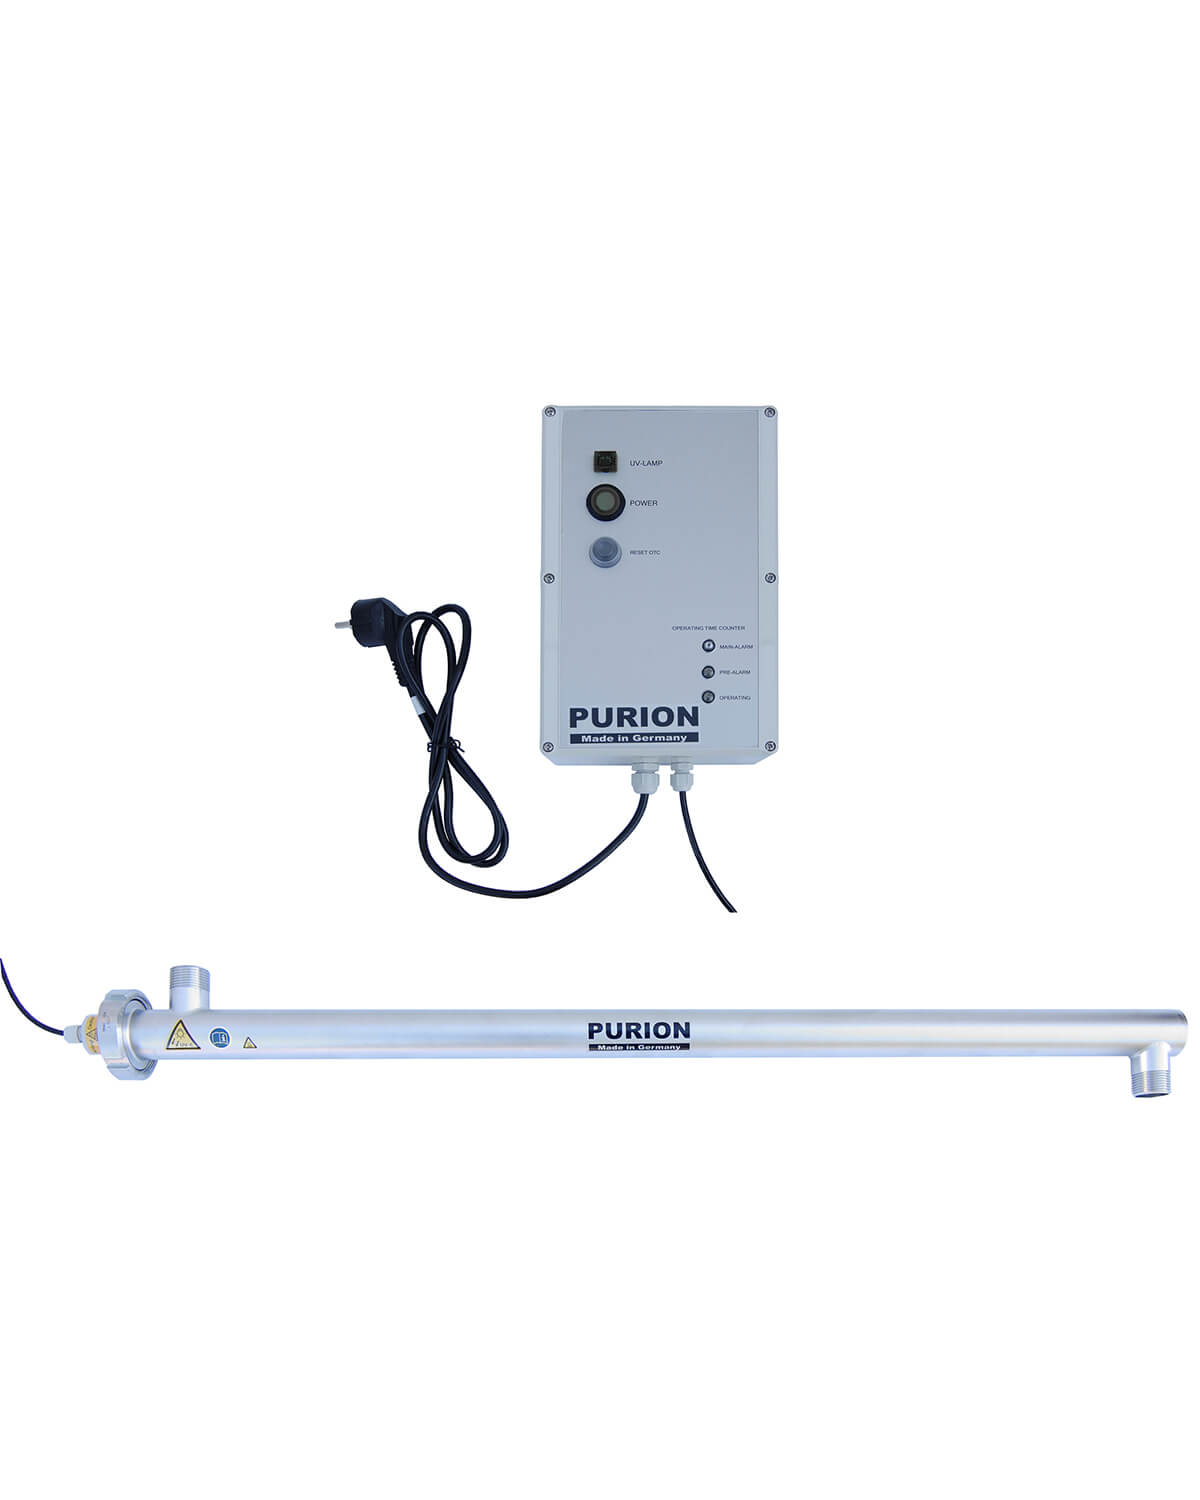 Ein kleines elektronisches Gerät mit angeschlossenem Kabel, das bei der UV-C-Desinfektion für den PURION 2500 36W OTC der PURION GmbH und trinkwasser hilft.